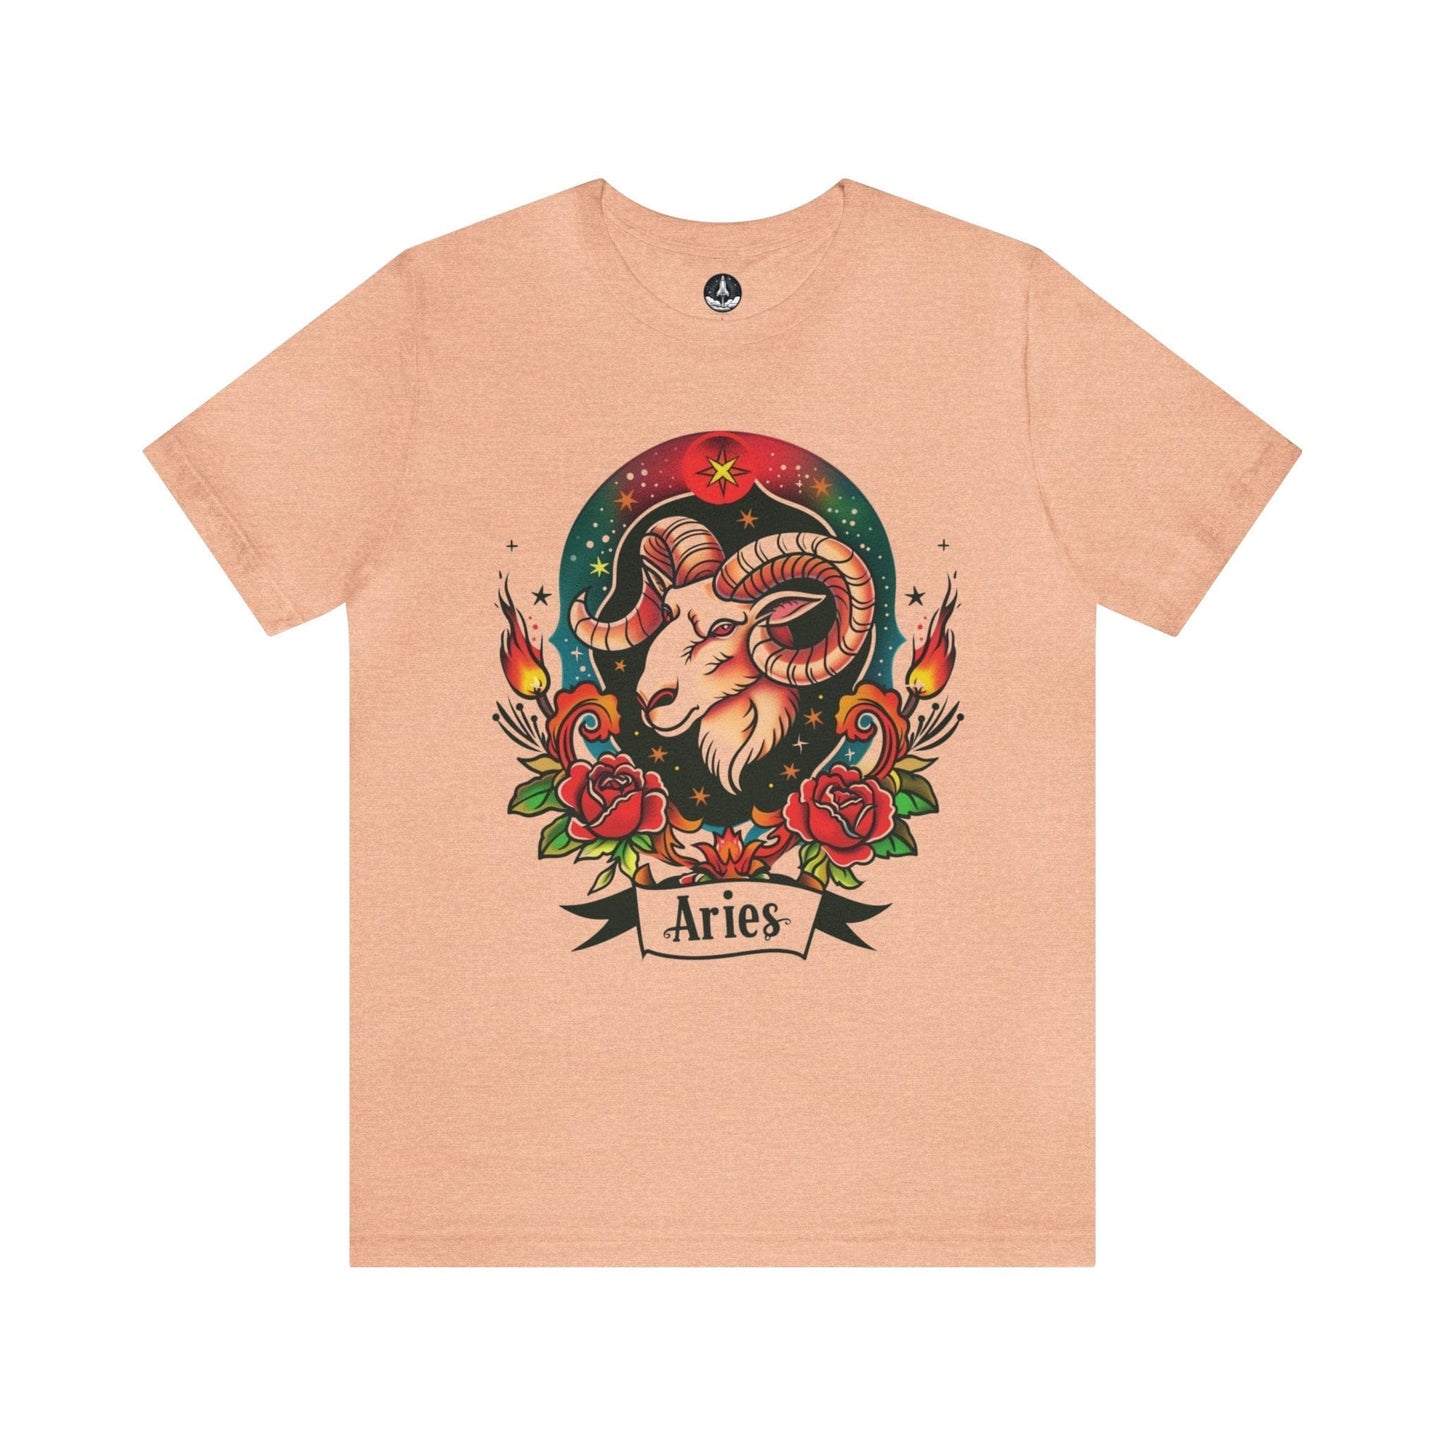 T-Shirt Heather Peach / S Fiery Aries Tattoo Art T-Shirt - Soft Cotton Zodiac-Inspired T-Shirt